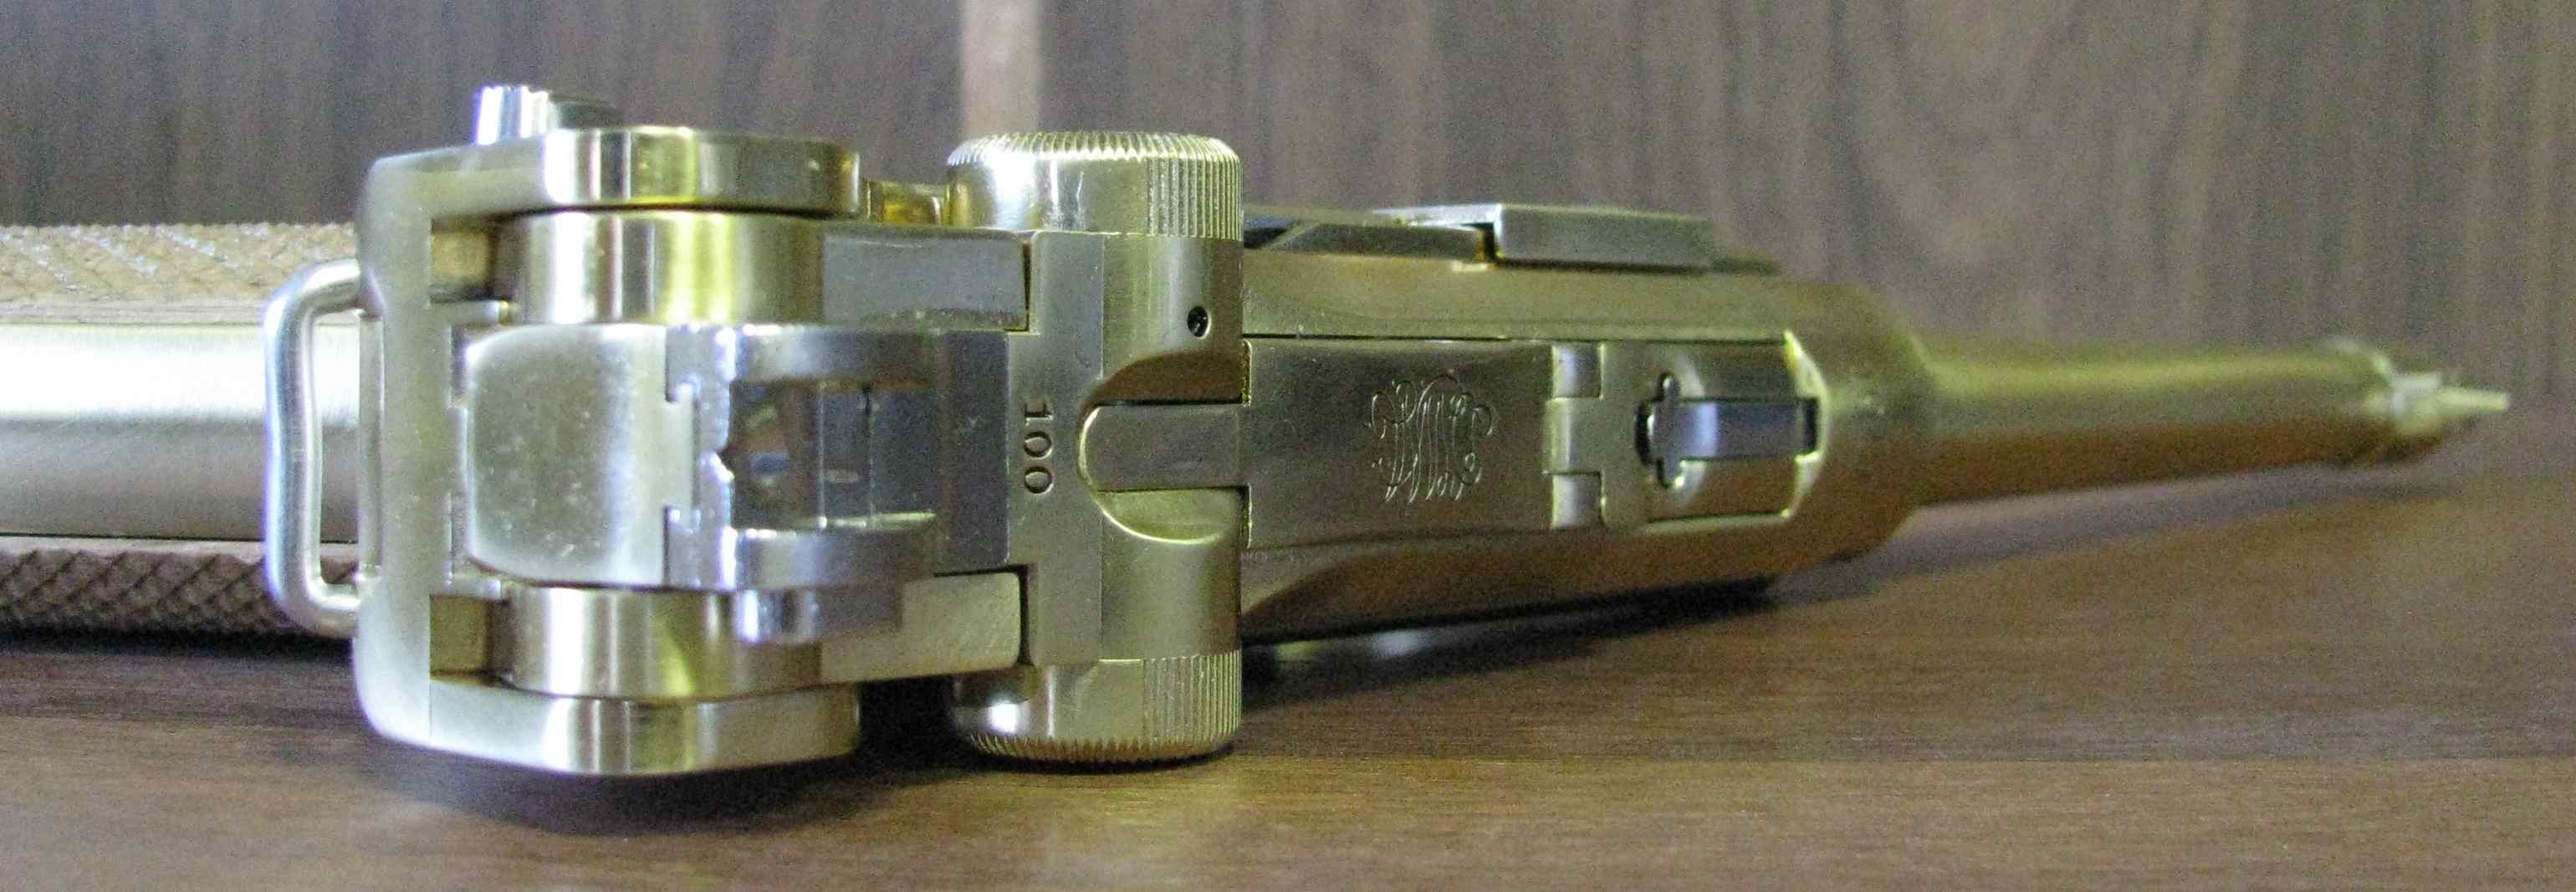 Marine Luger P08 от Мarushin 6 дюймов Коллекционная модель Морской Люгер П08